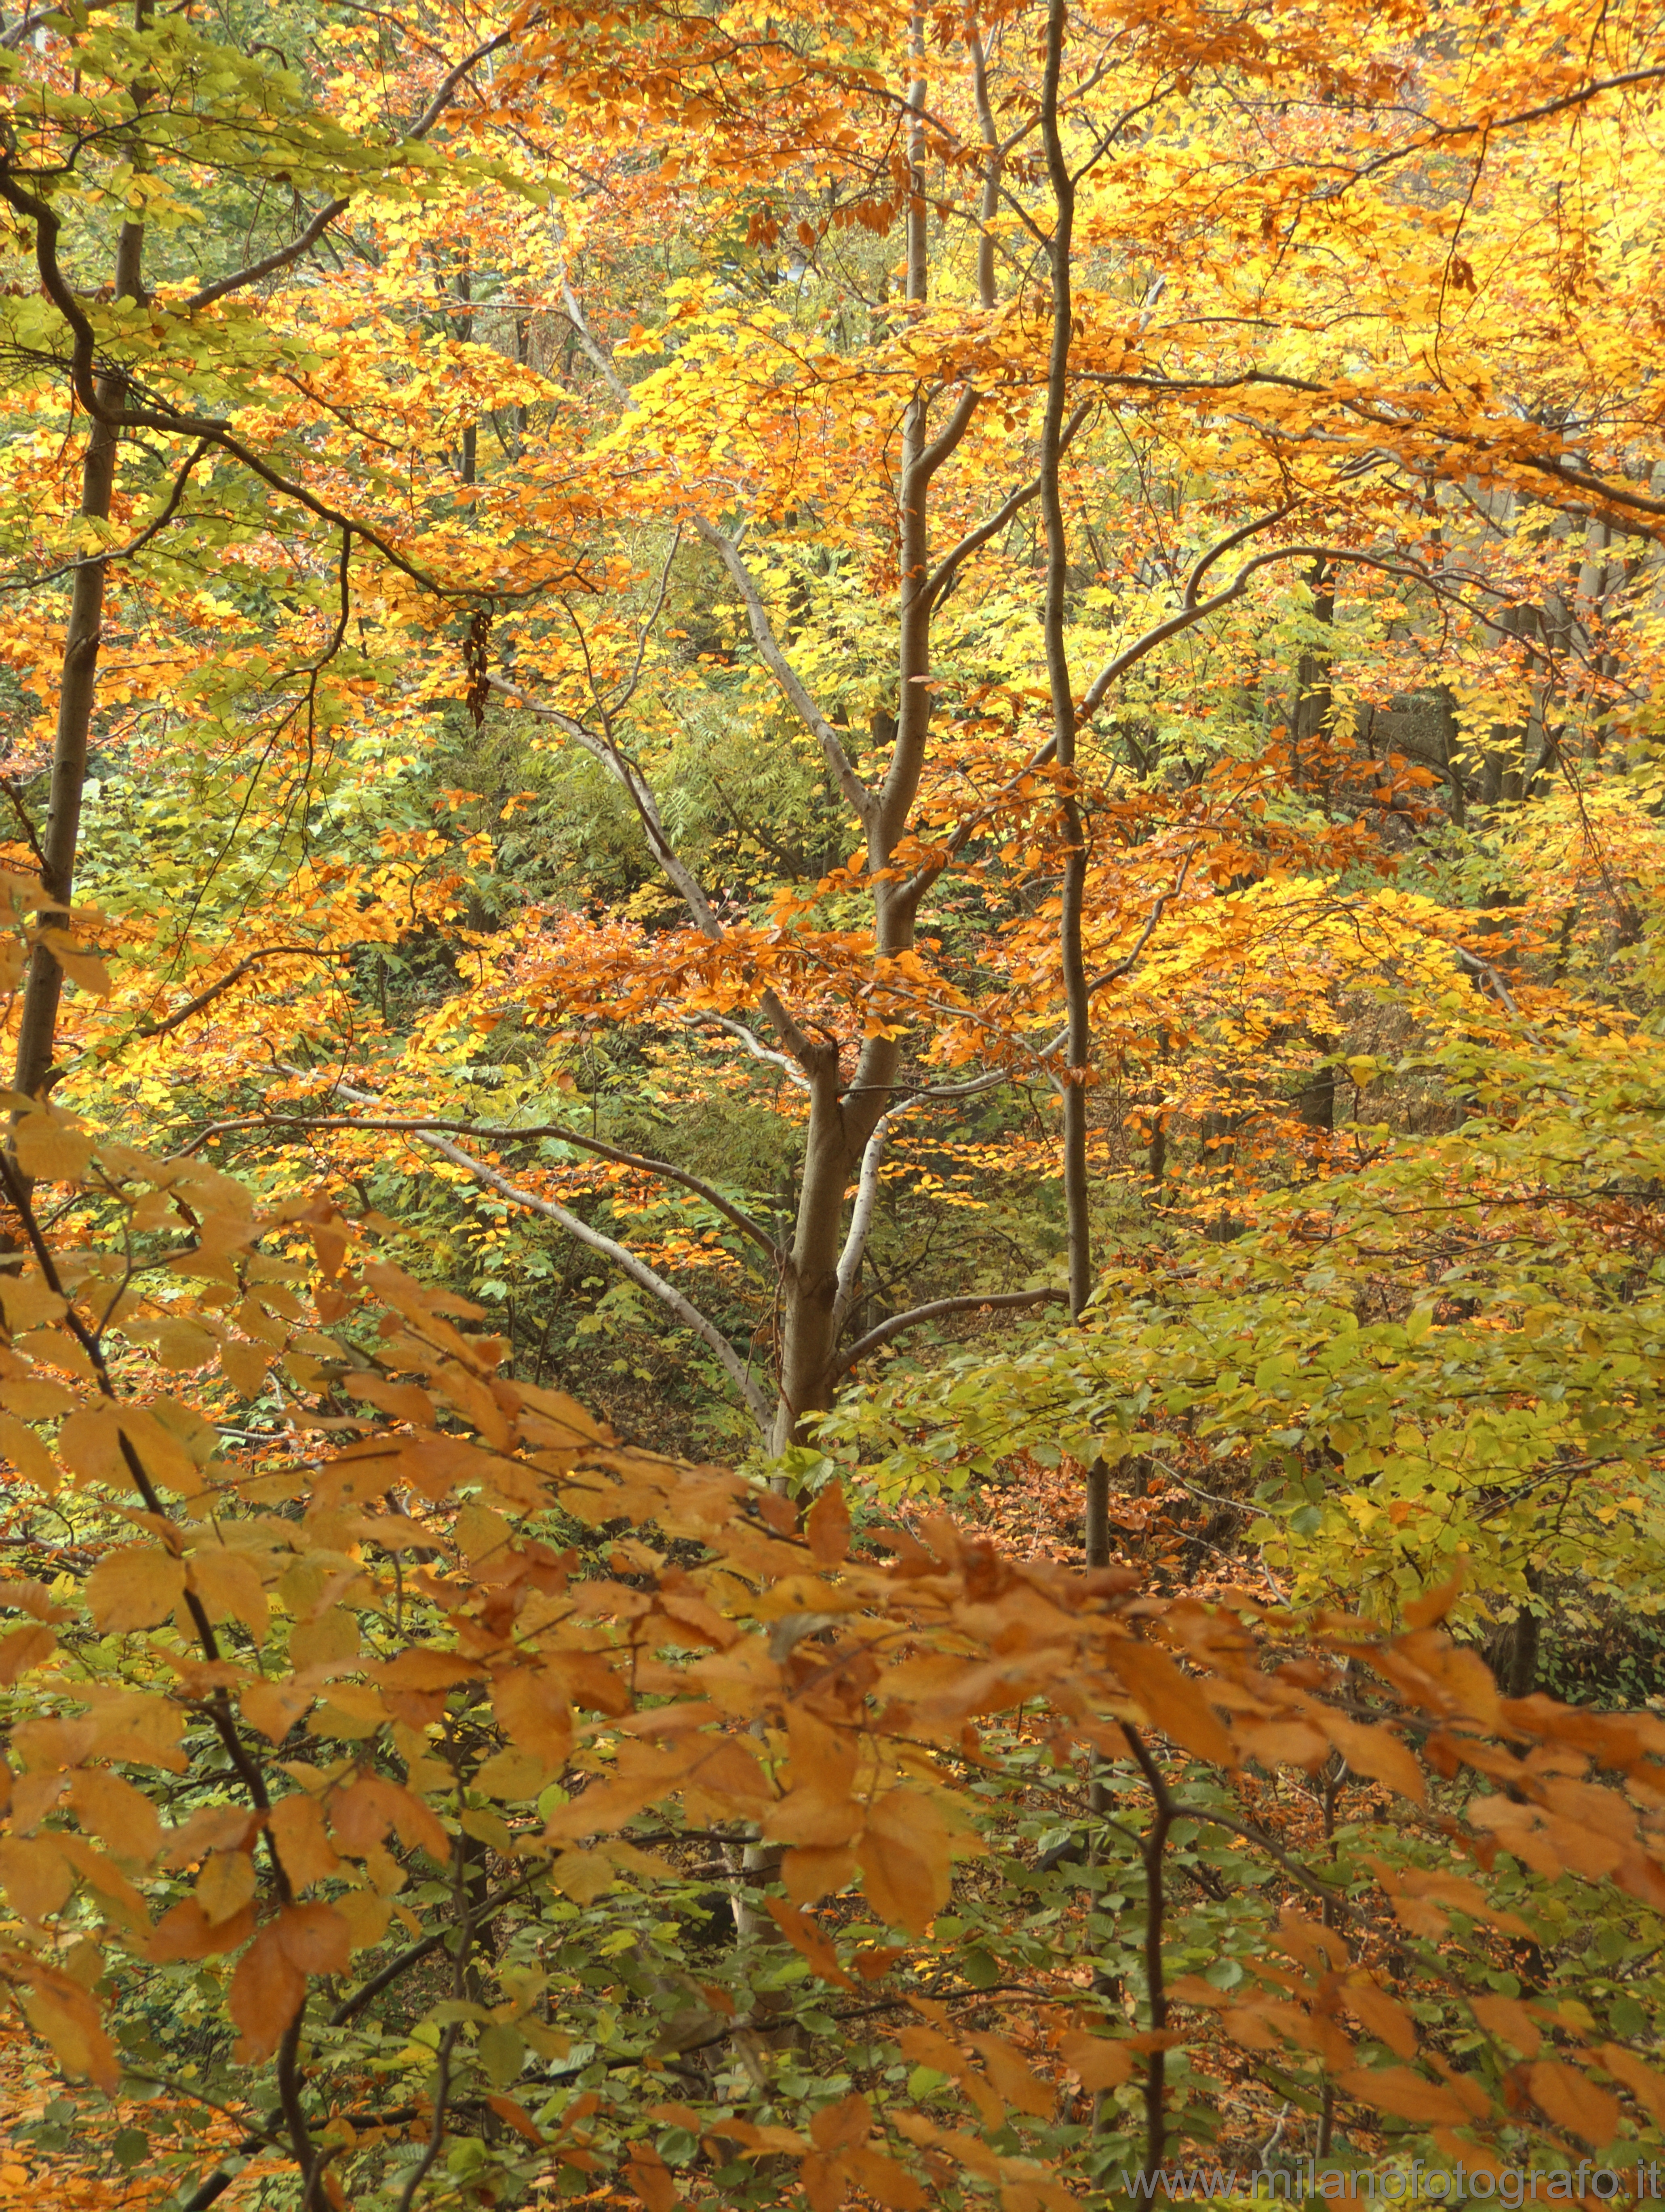 Panoramica Zegna (Biella): Colori del bosco in autunno - Panoramica Zegna (Biella)